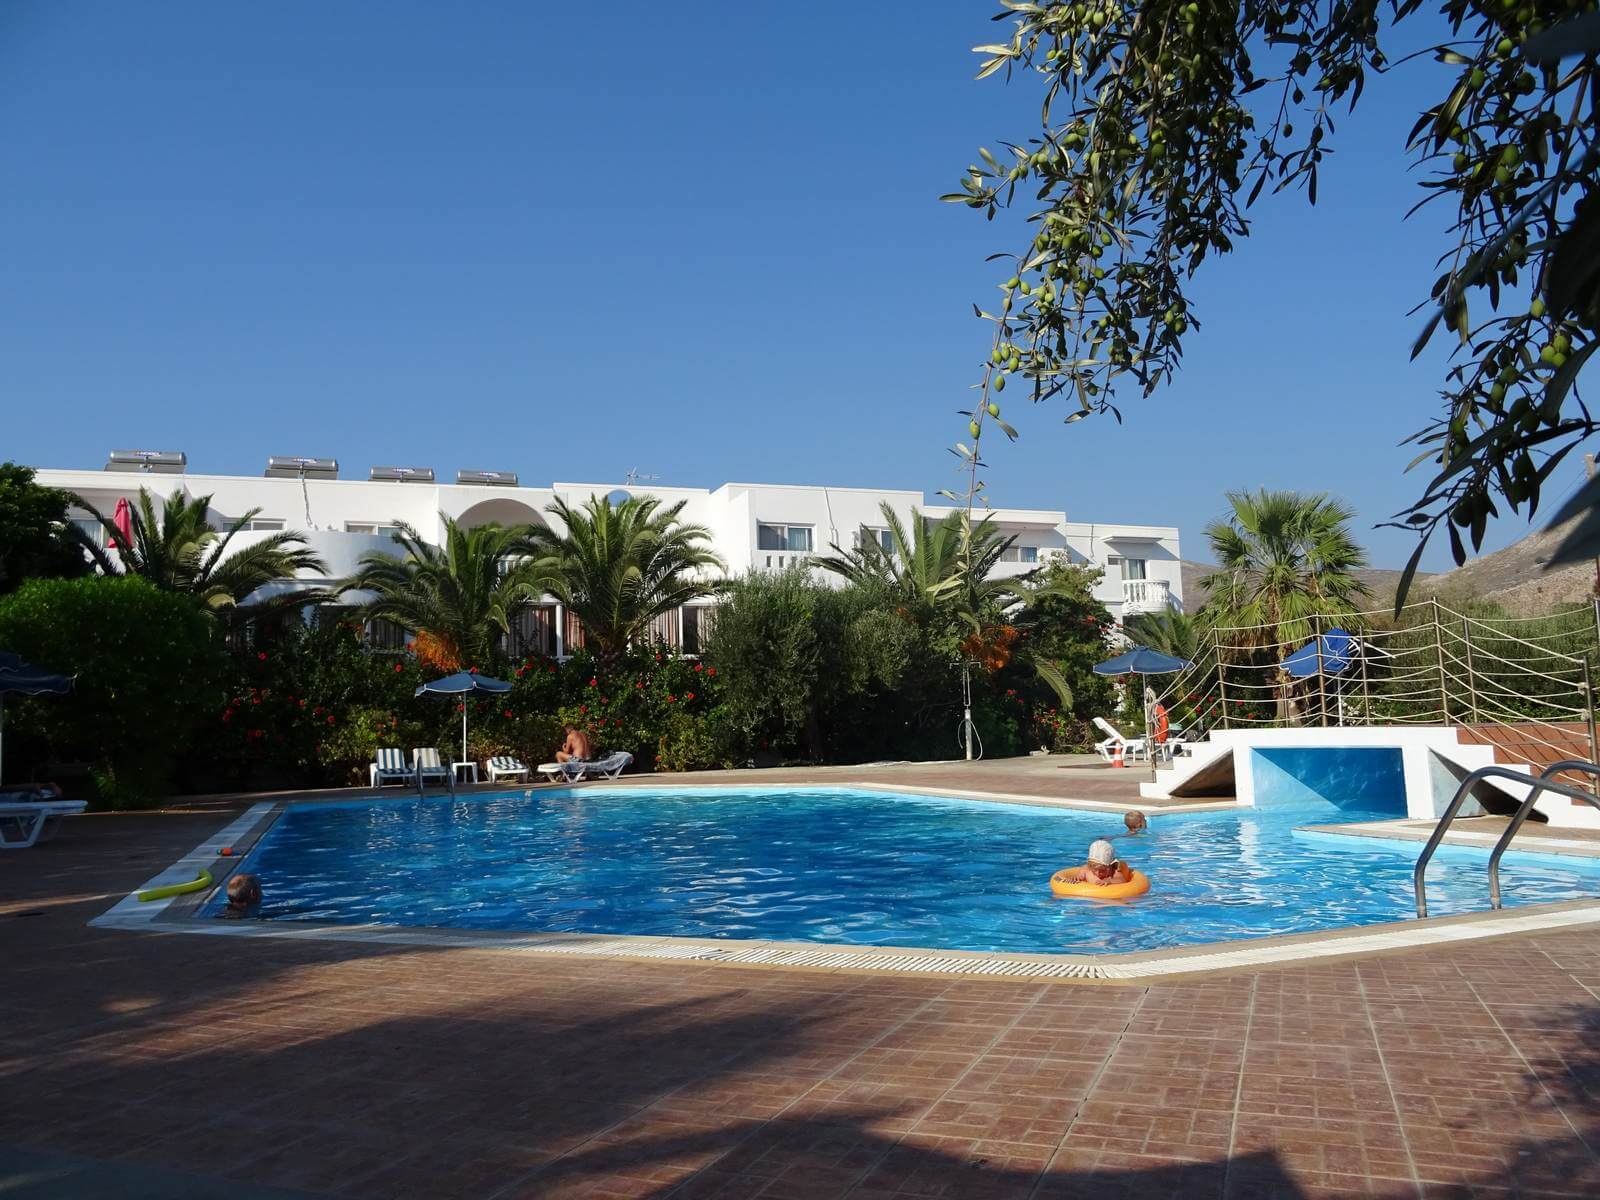 Pool und Gebude des Hotels in Eristos auf Tilos - Lupe Reisen